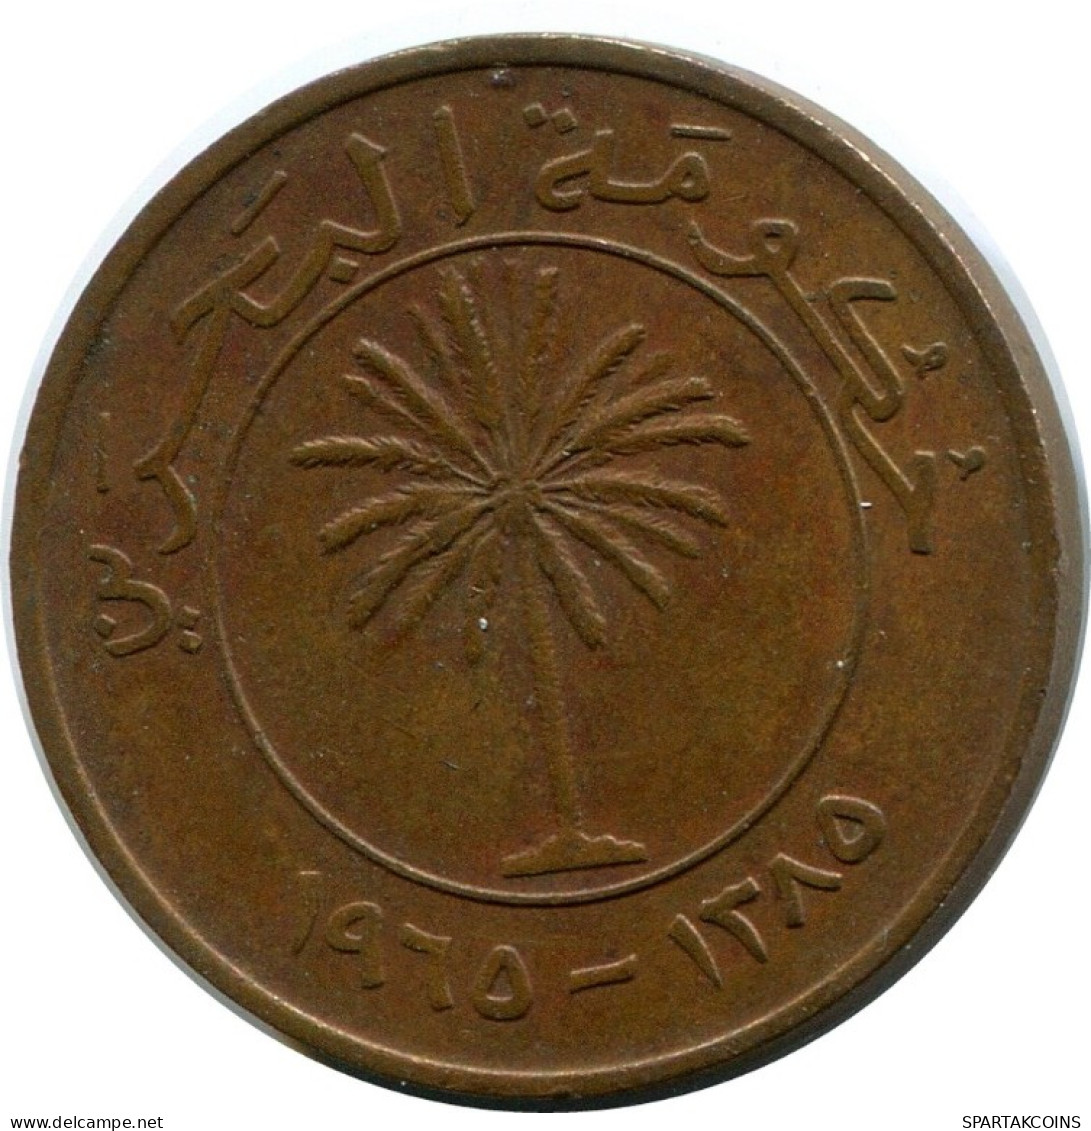 5 FILS 1965 BAHRAIN Islamic Coin #AK179.U.A - Bahrain